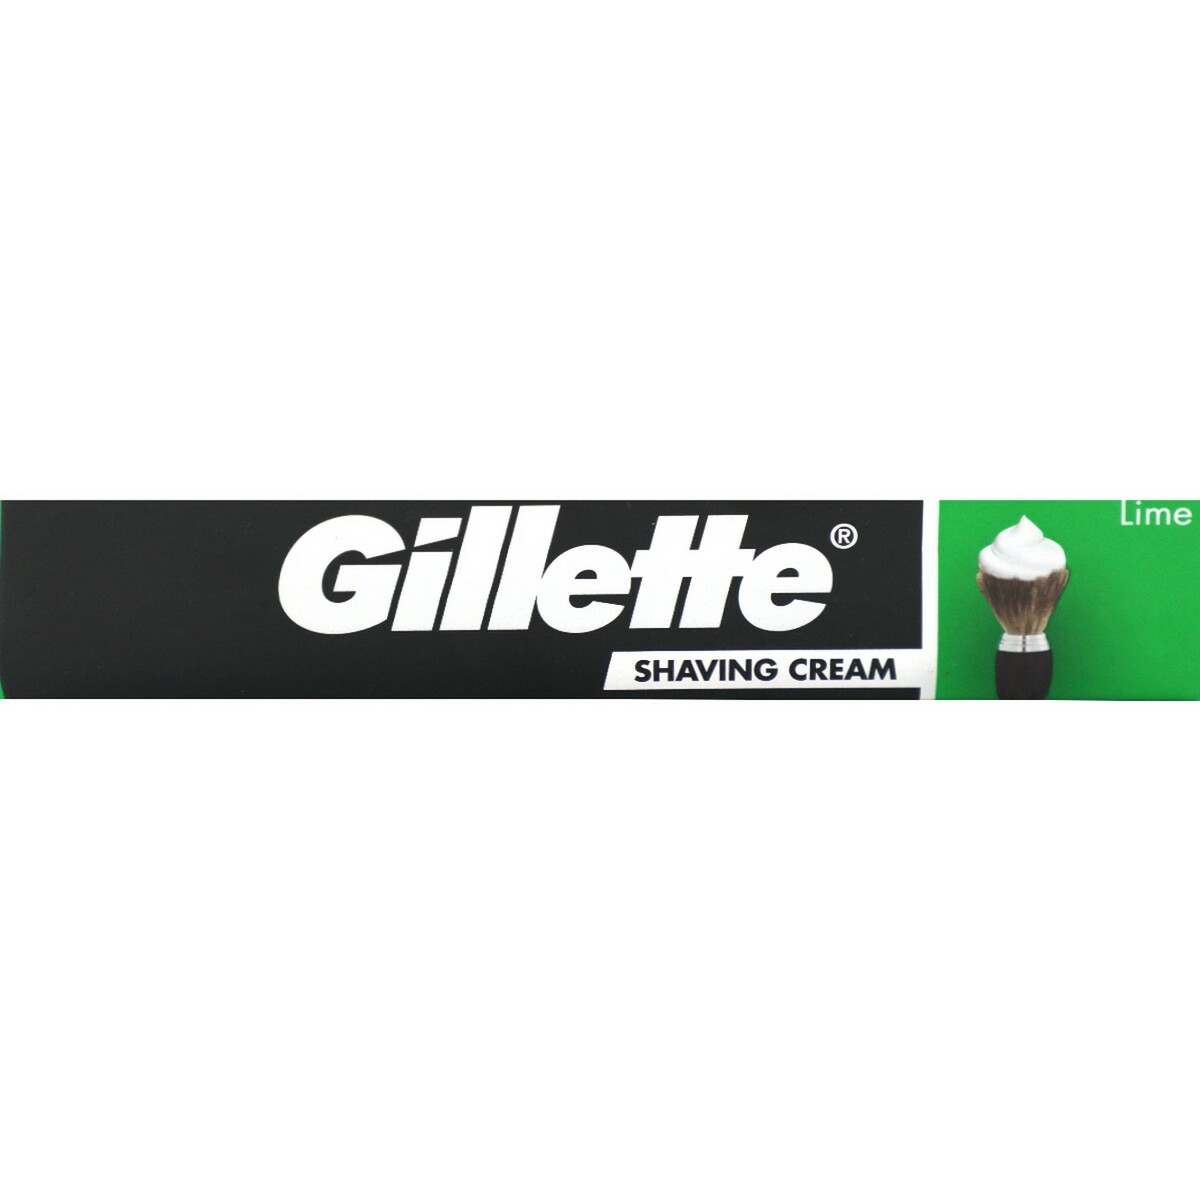 Gillette Shaving Cream Lime 30g